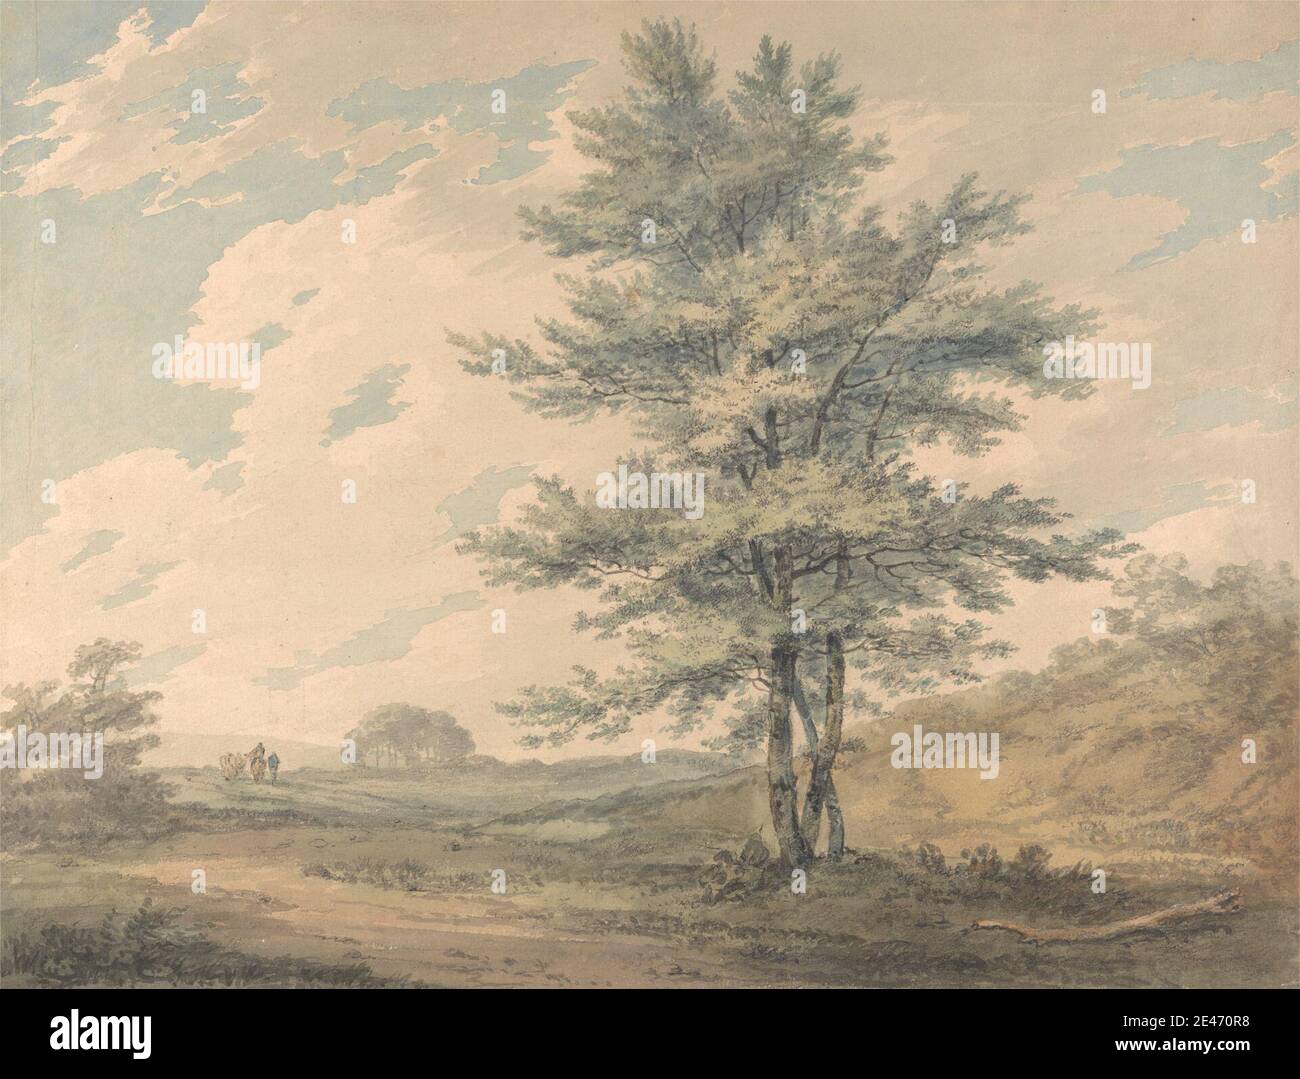 Joseph Mallord William Turner, 1775–1851, britisch, Landschaft mit Bäumen und Figuren, ca. 1796. Aquarell und Graphit auf Medium, leicht strukturiert, gewebt Papier. Wolken, Figuren, Genre Thema, Pferde (Tiere), Landschaft, Holz, Bäume Stockfoto